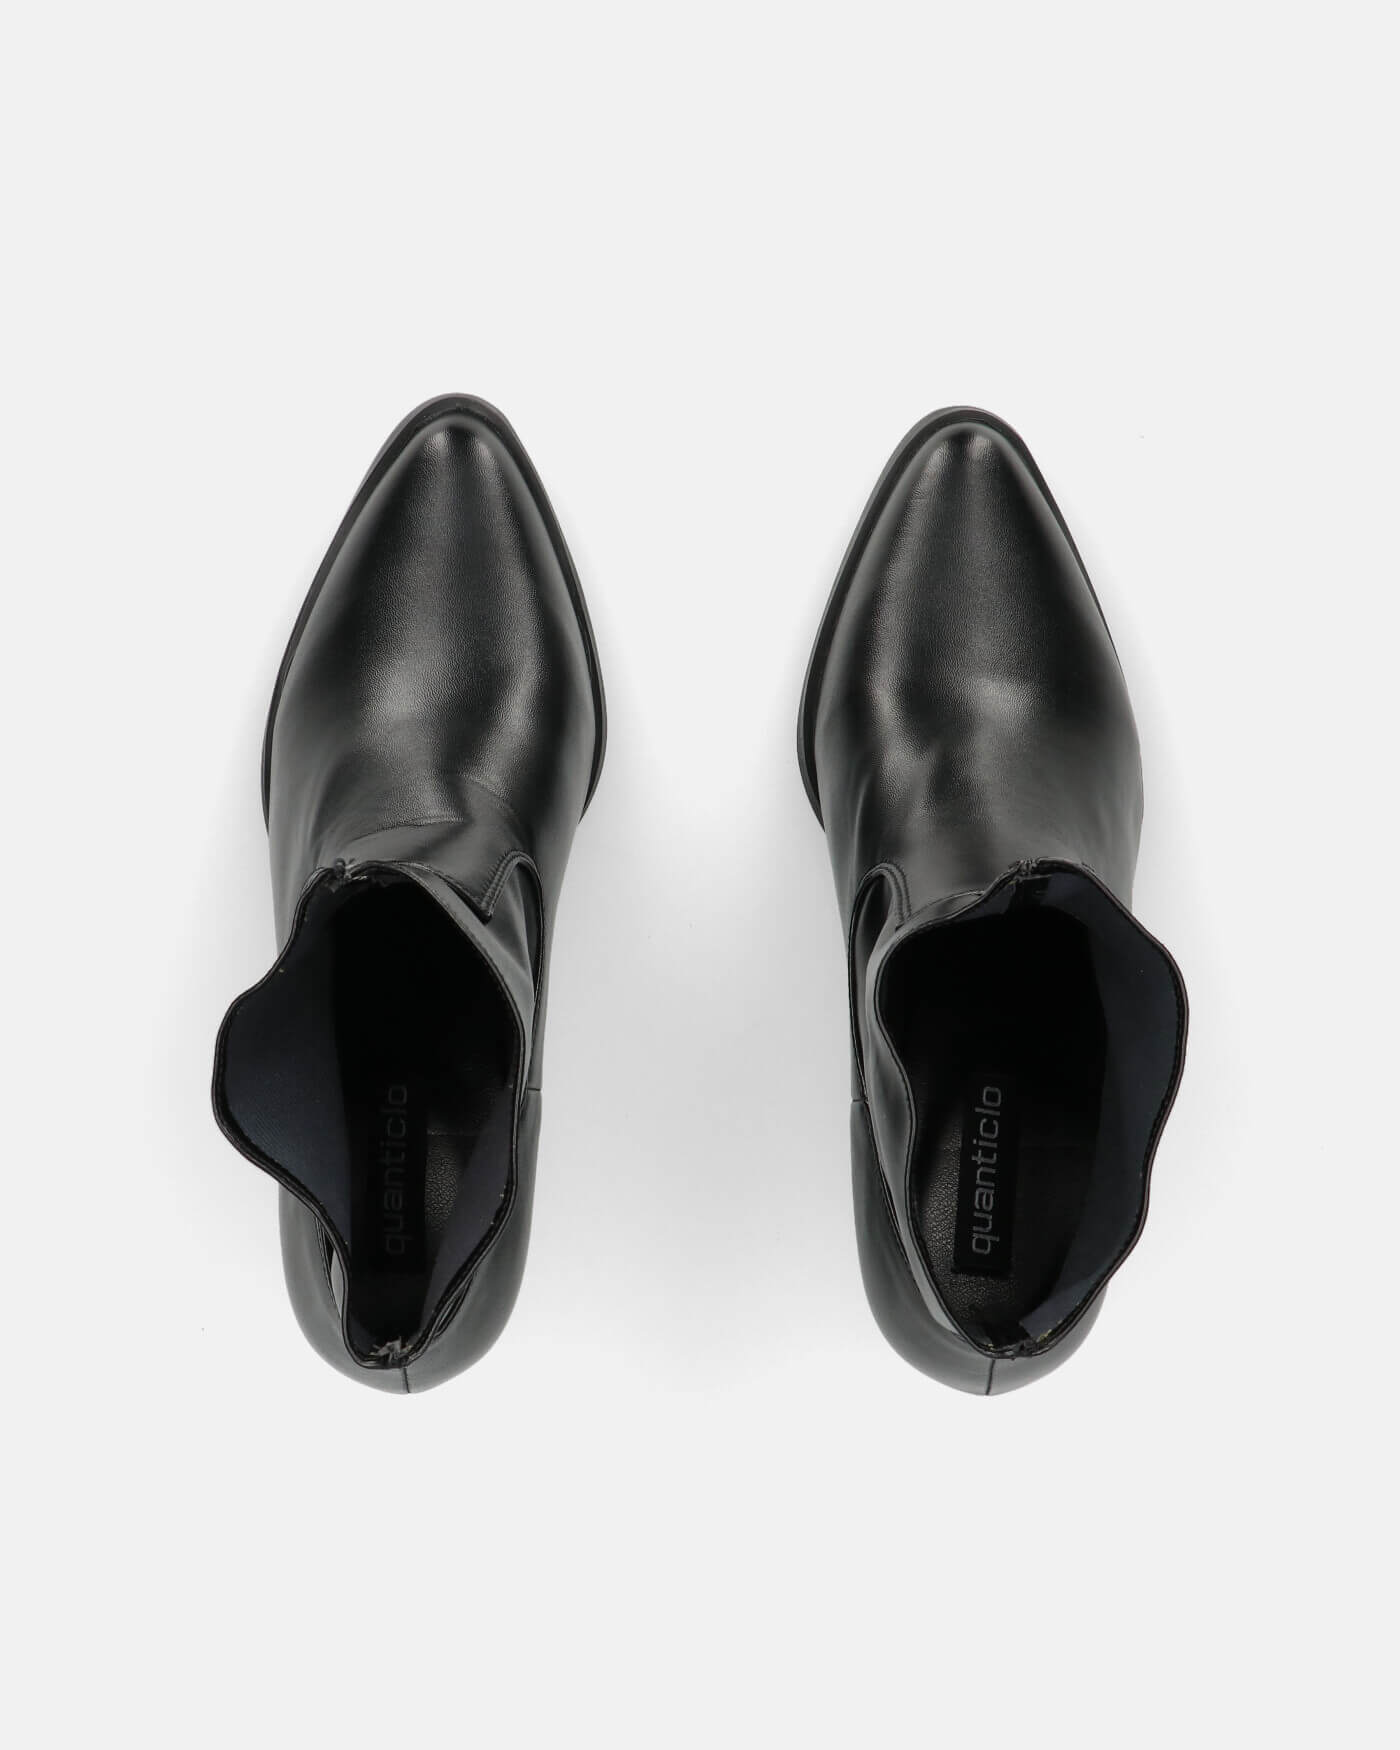 2 in 1 - CAMILA - stivali texani con gambale removibile in ecopelle neri e ricami bianchi